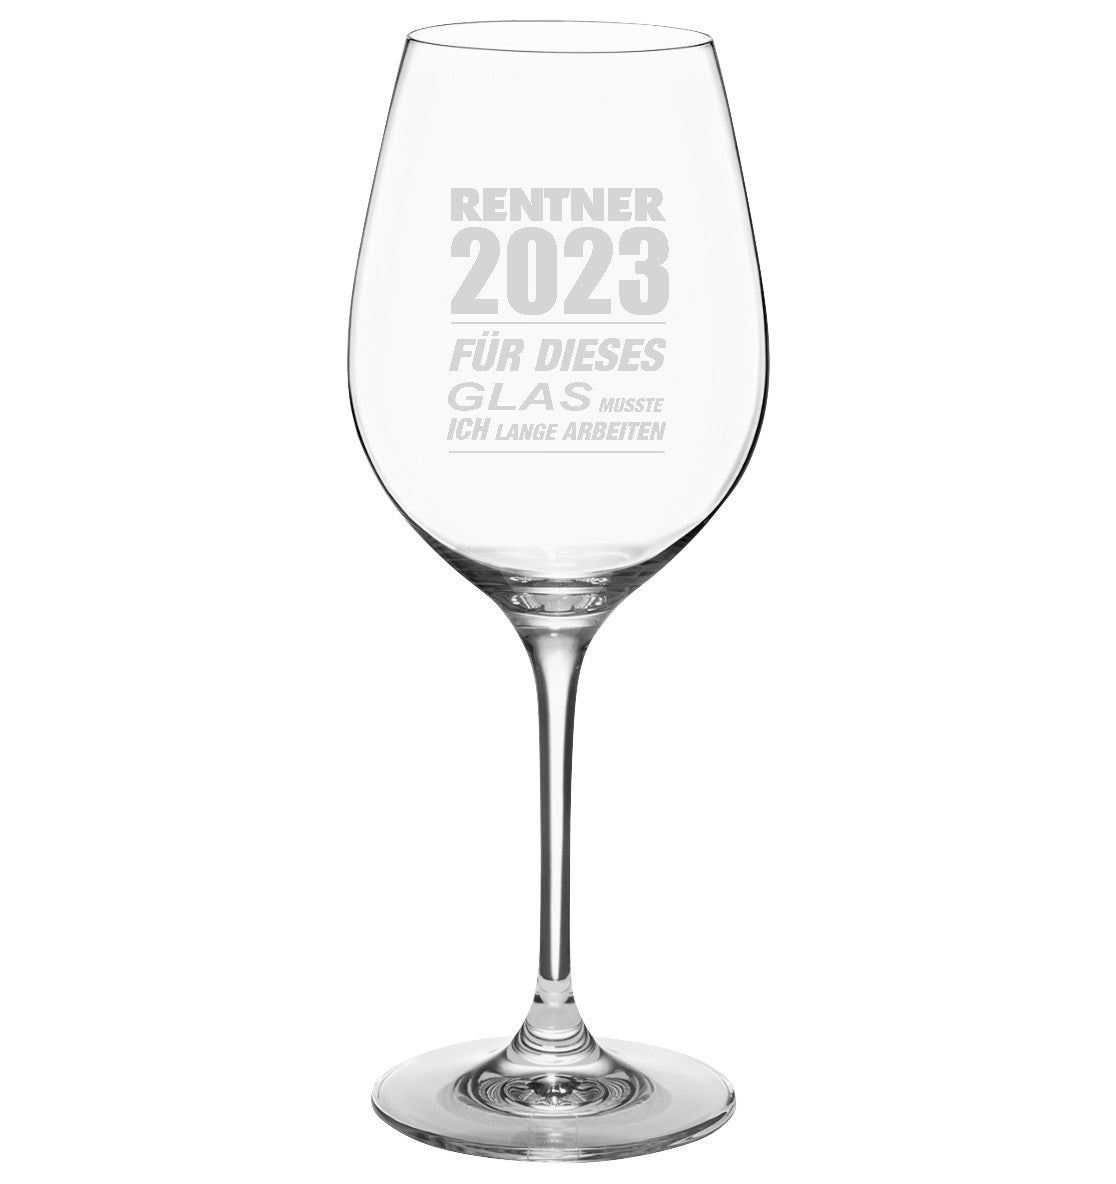 Rentner 2023 für dieses Glas musste ich lange arbeiten - Wein Glas